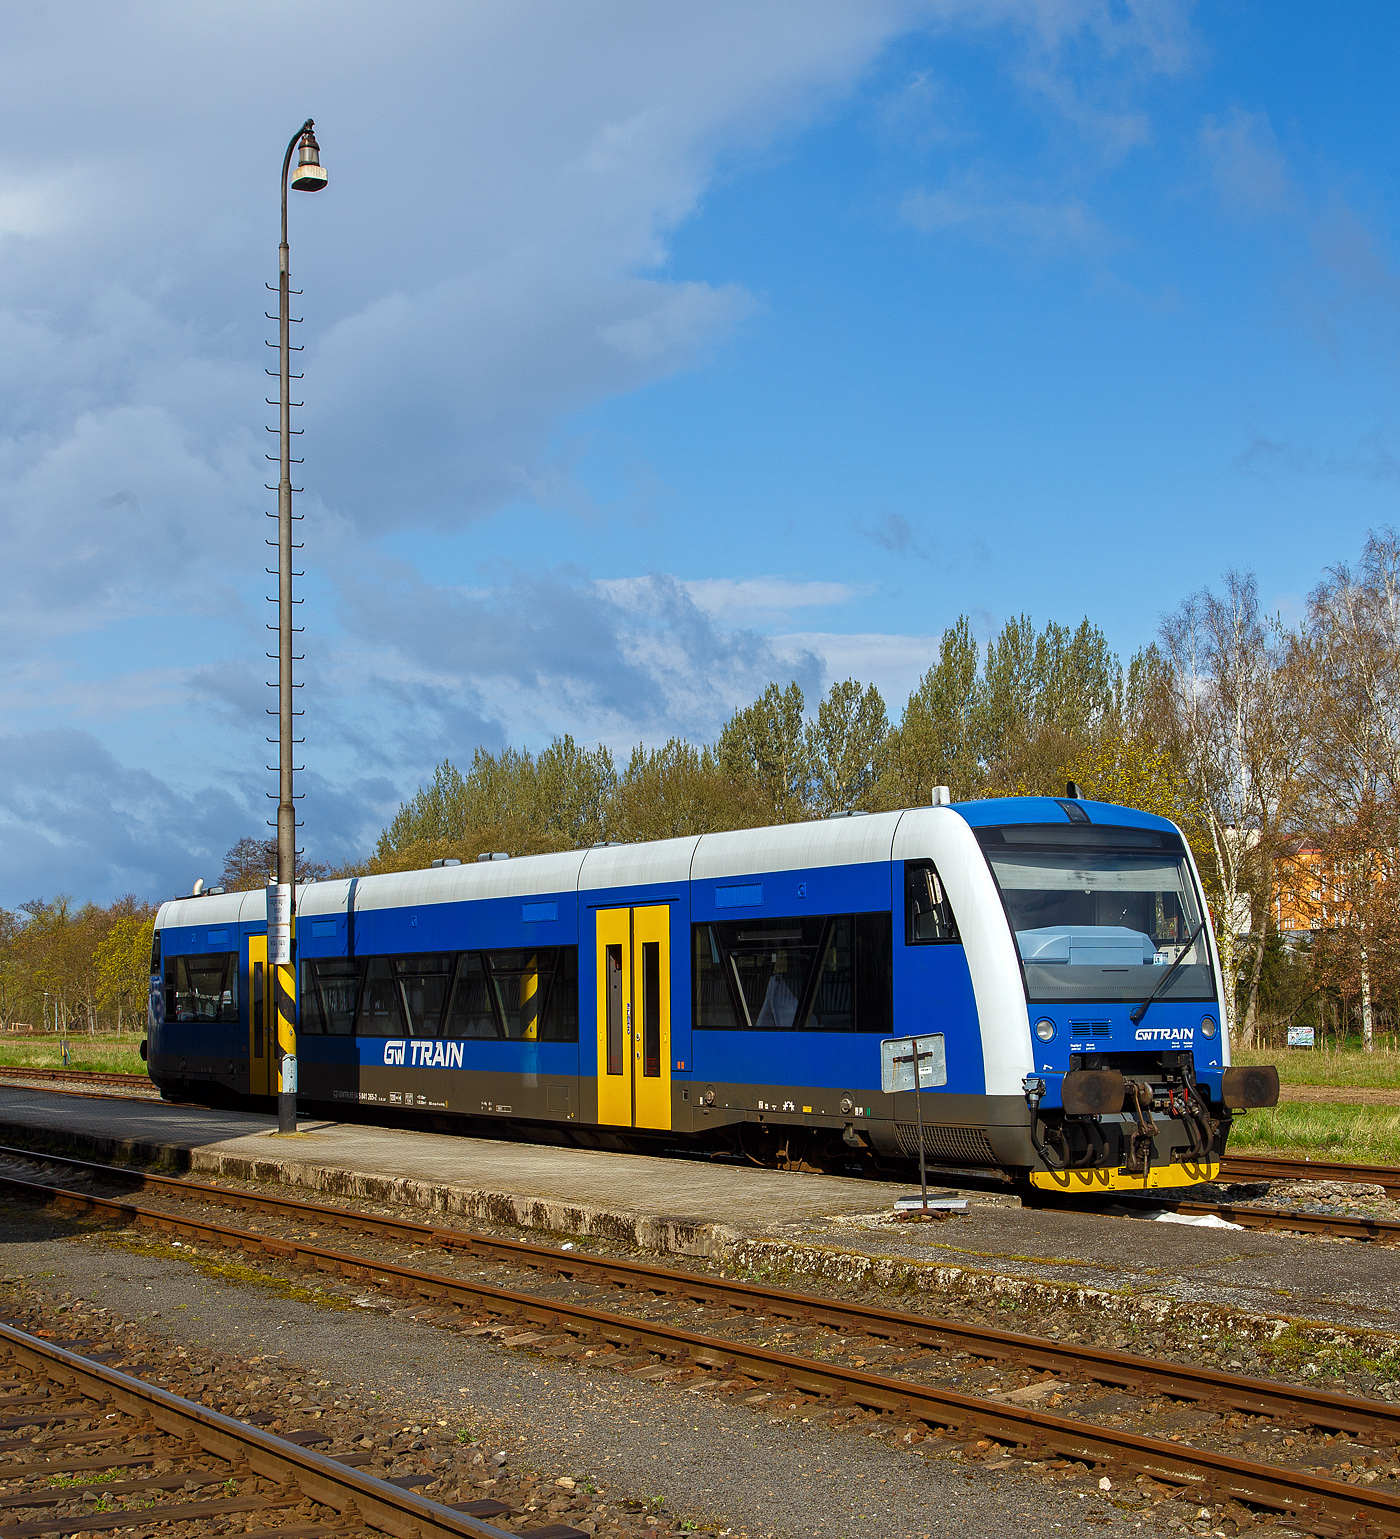 Der blaue STADLER Regio-Shuttle RS1 bzw. RegioSpider 841 265-2 (95 54 5841 265-2 CZ-GWTR) der GW Train Regio a.s. hat am 19.04.2023 von Mariánské Lázně (Marienbad) kommend den Bahnhof Karlovy Vary dolní nádraží (Karlsbad untere Bahnhof) erreicht und steht gleichauf zur Rückfahrt bereit. 

Der STADLER Regio-Shuttle RS1 wurde 1998 von ADtranz (ABB Daimler-Benz Transportation GmbH) in Berlin (heute Stadler Pankow) unter der Fabriknummer 36784 gebaut und als BOB VT 65 an die Bodensee-Oberschwaben-Bahn geliefert, von 2007 bis 2021 lief er unter der NVR-Nr. 5 80 0650 355-0 D-BOBFN. Im Jahr 2021 wurde er an die GW Train Regio a.s. nach Tschechien verkauft und war von 2021 bis 2022 als 95 80 0650 355-0 D-GWTR noch in Deutschland eingestellt.

Die GW Train Regio a.s. (bis 20. Dezember 2011 Viamont Regio a.s.) ist ein tschechisches Eisenbahnverkehrsunternehmen, mit Sitz in Ústí nad Labem.

Nachdem die Firma Viamont ab 1997 auf verschiedenen Bahnstrecken den Schienenpersonennahverkehr übernahm, gründete die Gesellschaft am 19. Juni 2008 die Viamont Regio a.s. als 100%ige Tochtergesellschaft. Diese wurde am 27. Oktober 2011 an die IDS building corporation a.s. verkauft, die sie am 20. Dezember 2011 in GW Train Regio umbenannte. Im Juni 2014 wurde das Unternehmen an die ČSAD Jihotrans a.s. weiterverkauft. Im März 2015 wurde bekannt, dass die Gesellschaft ab Fahrplanwechsel 2016 drei zusätzliche Strecken im Böhmerwald für 15 Jahre betreiben wird. GW Train Regio betreibt diese Strecken allerdings erst seit Dezember 2017 und löste die České dráhy ab. Ferner betreibt sie die Schnellzüge Plzeň–Chomutov–Most nach einer Direktvergabe mit Triebwagen der DB-Baureihe 628.

Unteranderem Betreibt die GW Train Regio a.s. die Linie auf der schöne 53 km langen Strecke (SŽDC Kursbuchstrecke 149) von Karlovy Vary dolní nádraží (Karlsbad untere Bahnhof) über Bečov nad Teplou (Petschau) nach Mariánské Lázně (Marienbad).
